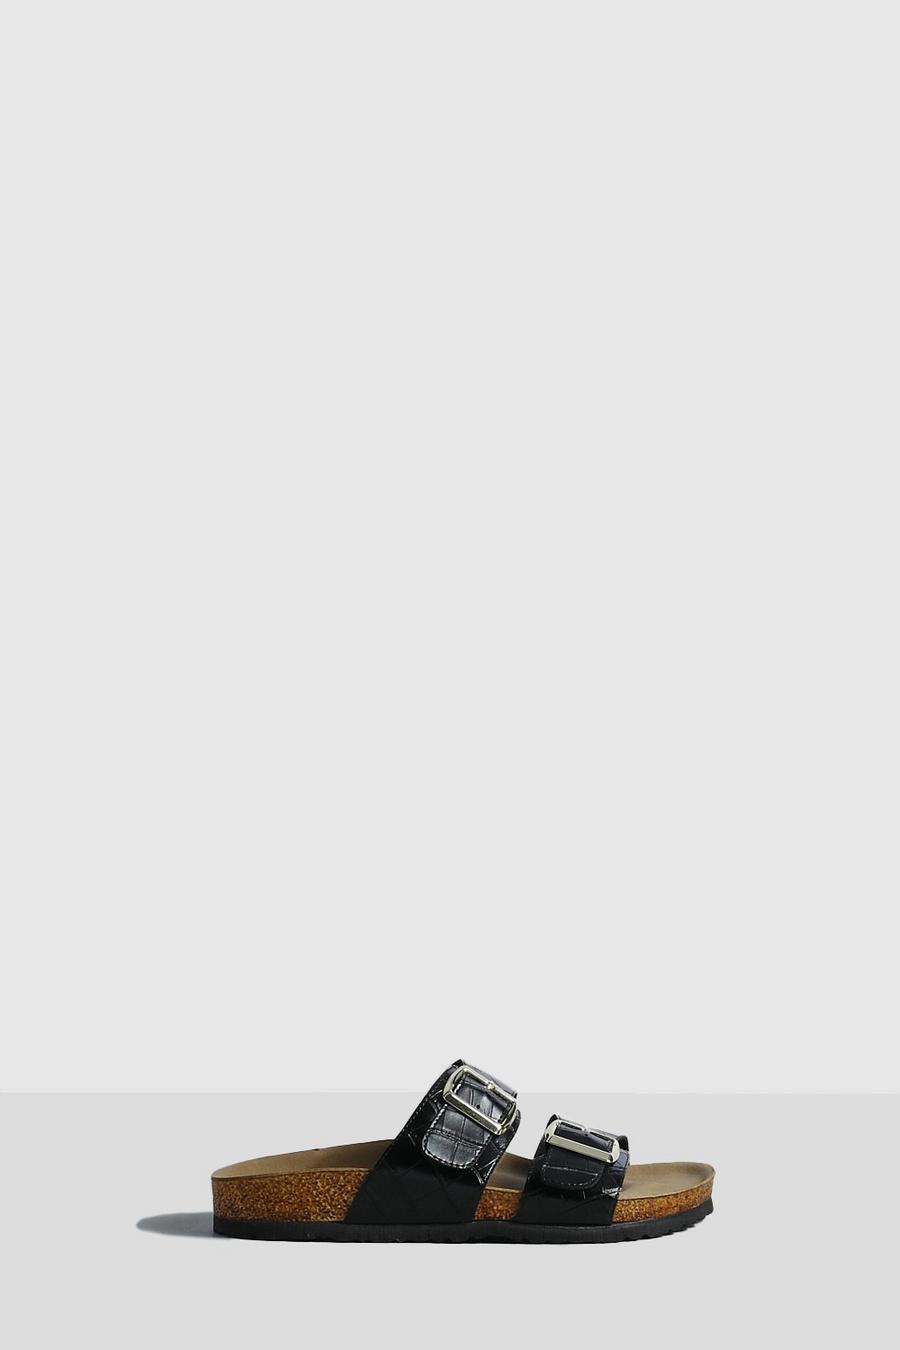 Sandalias de holgura ancha con plantilla blanda, hebilla doble y acabado de cocodrilo, Black image number 1